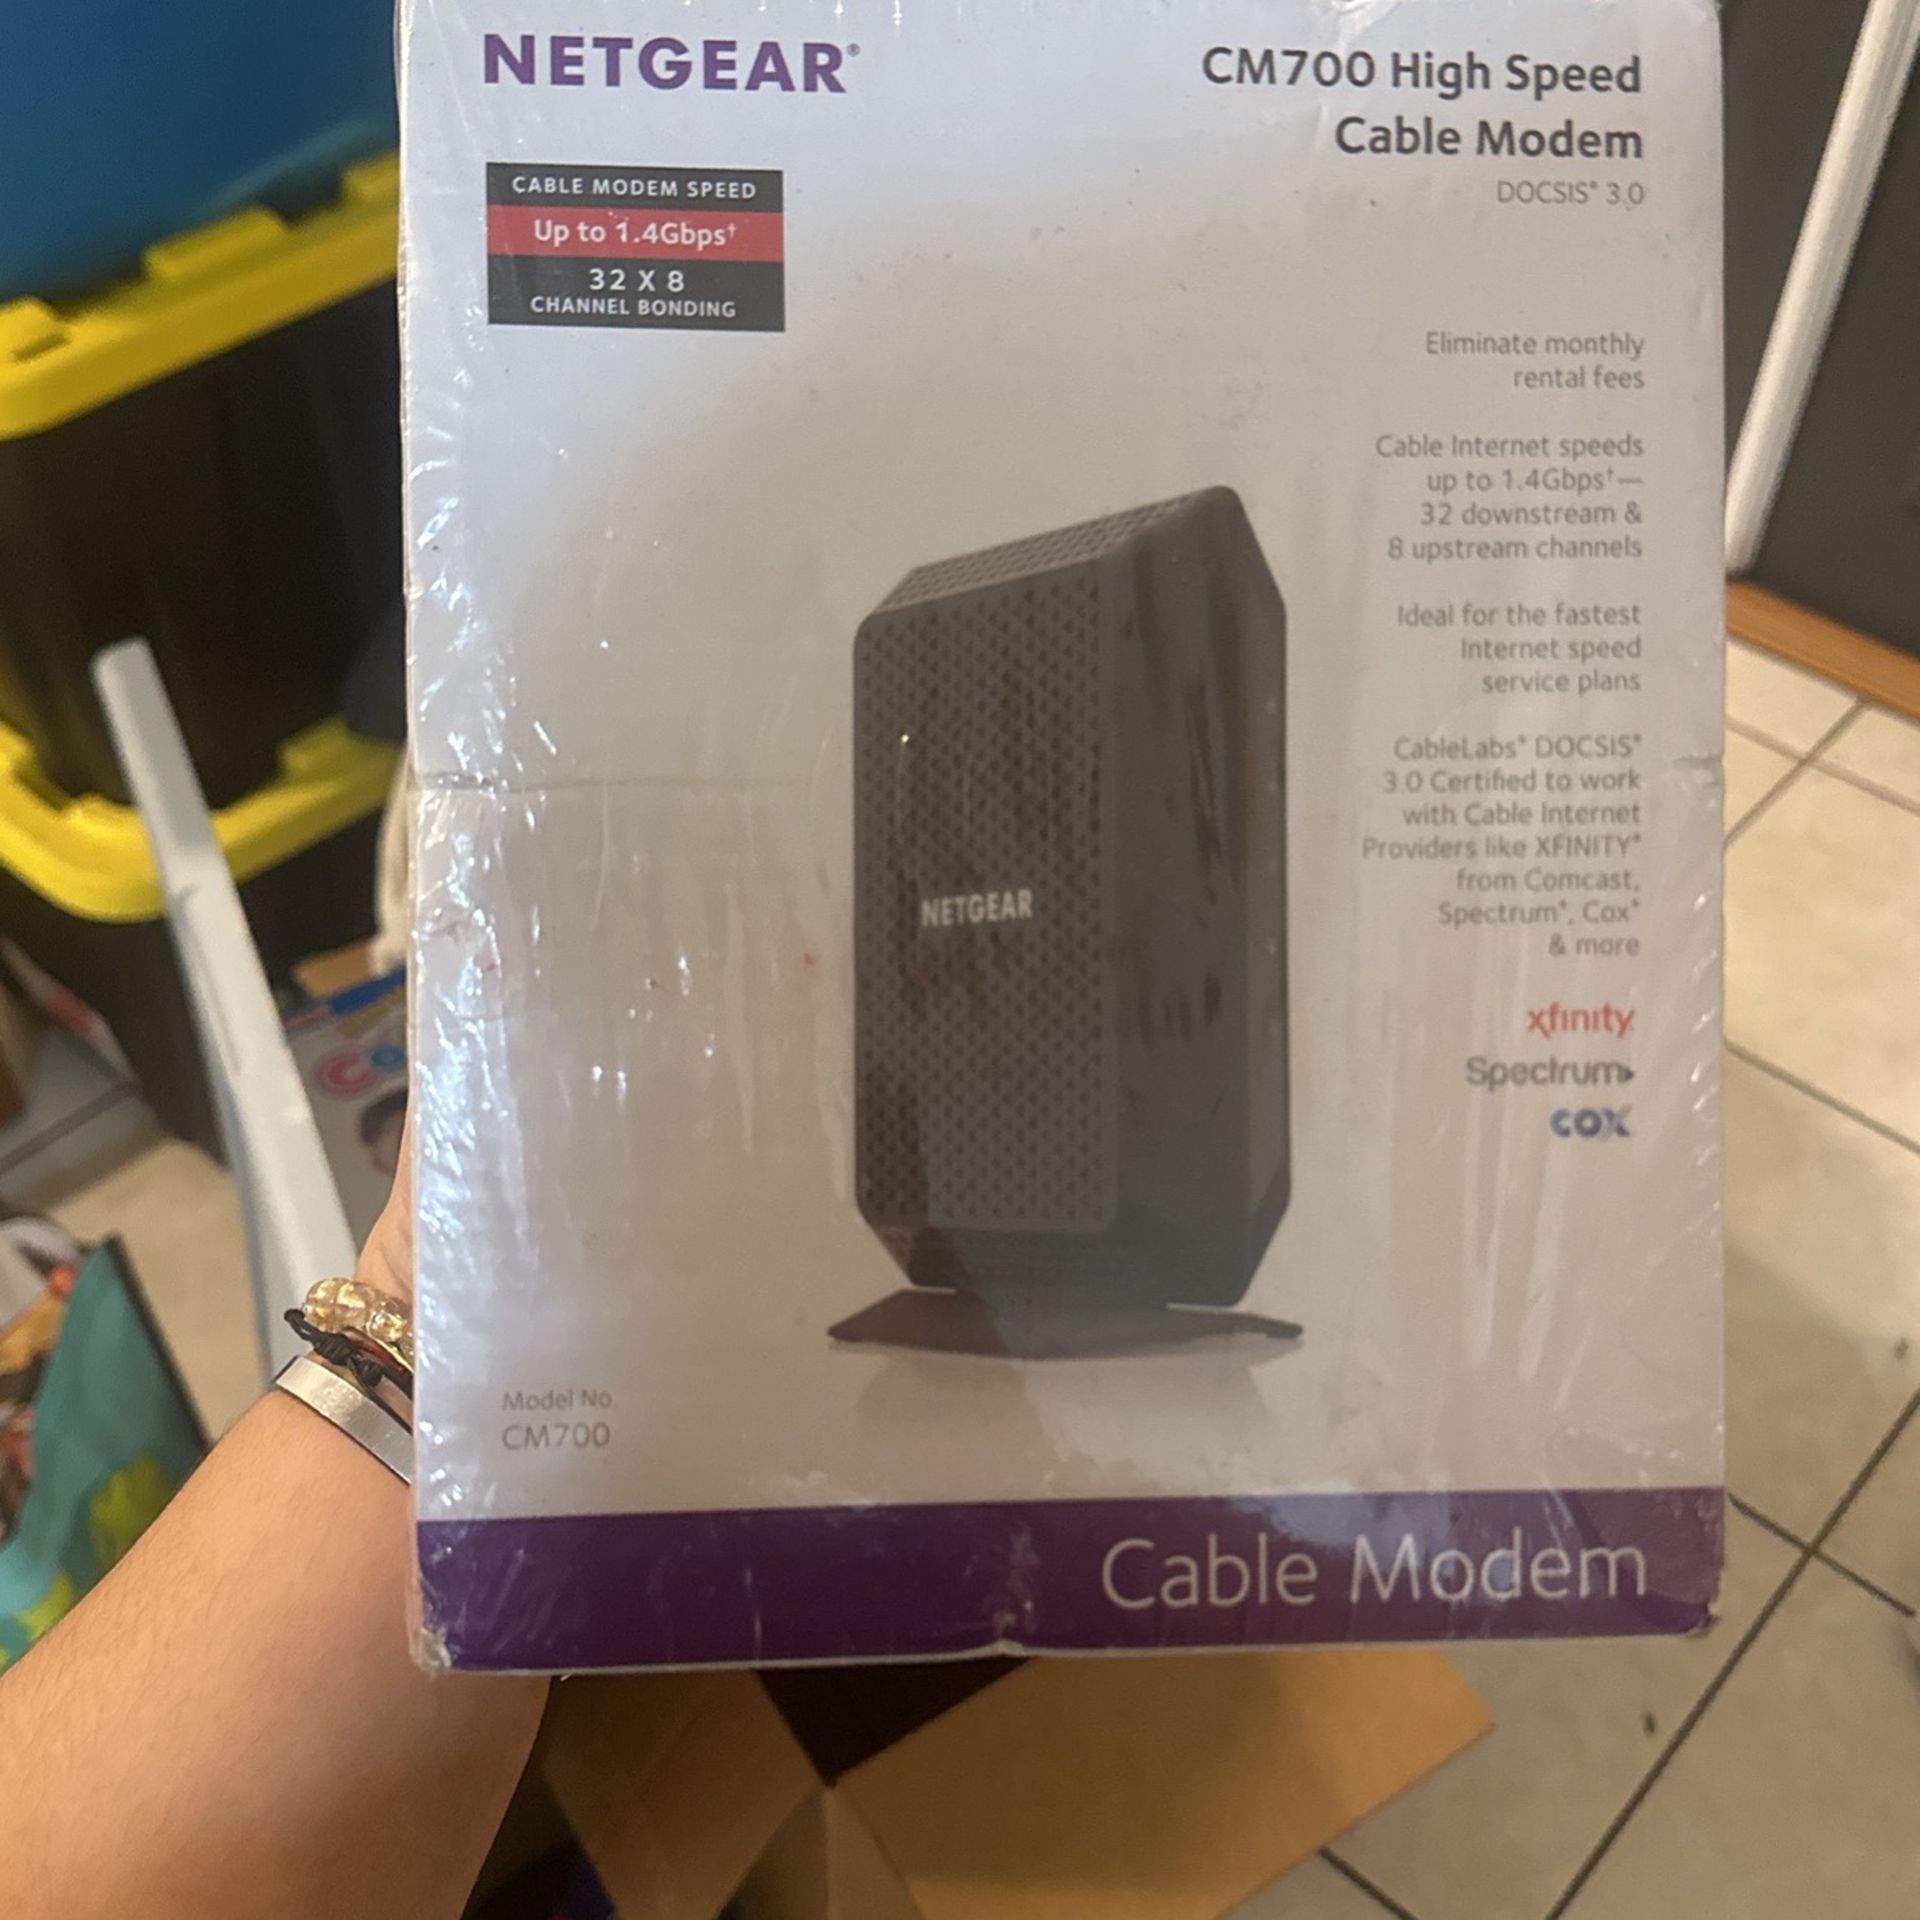 NETGEAR CM700 High speed Cable Modem